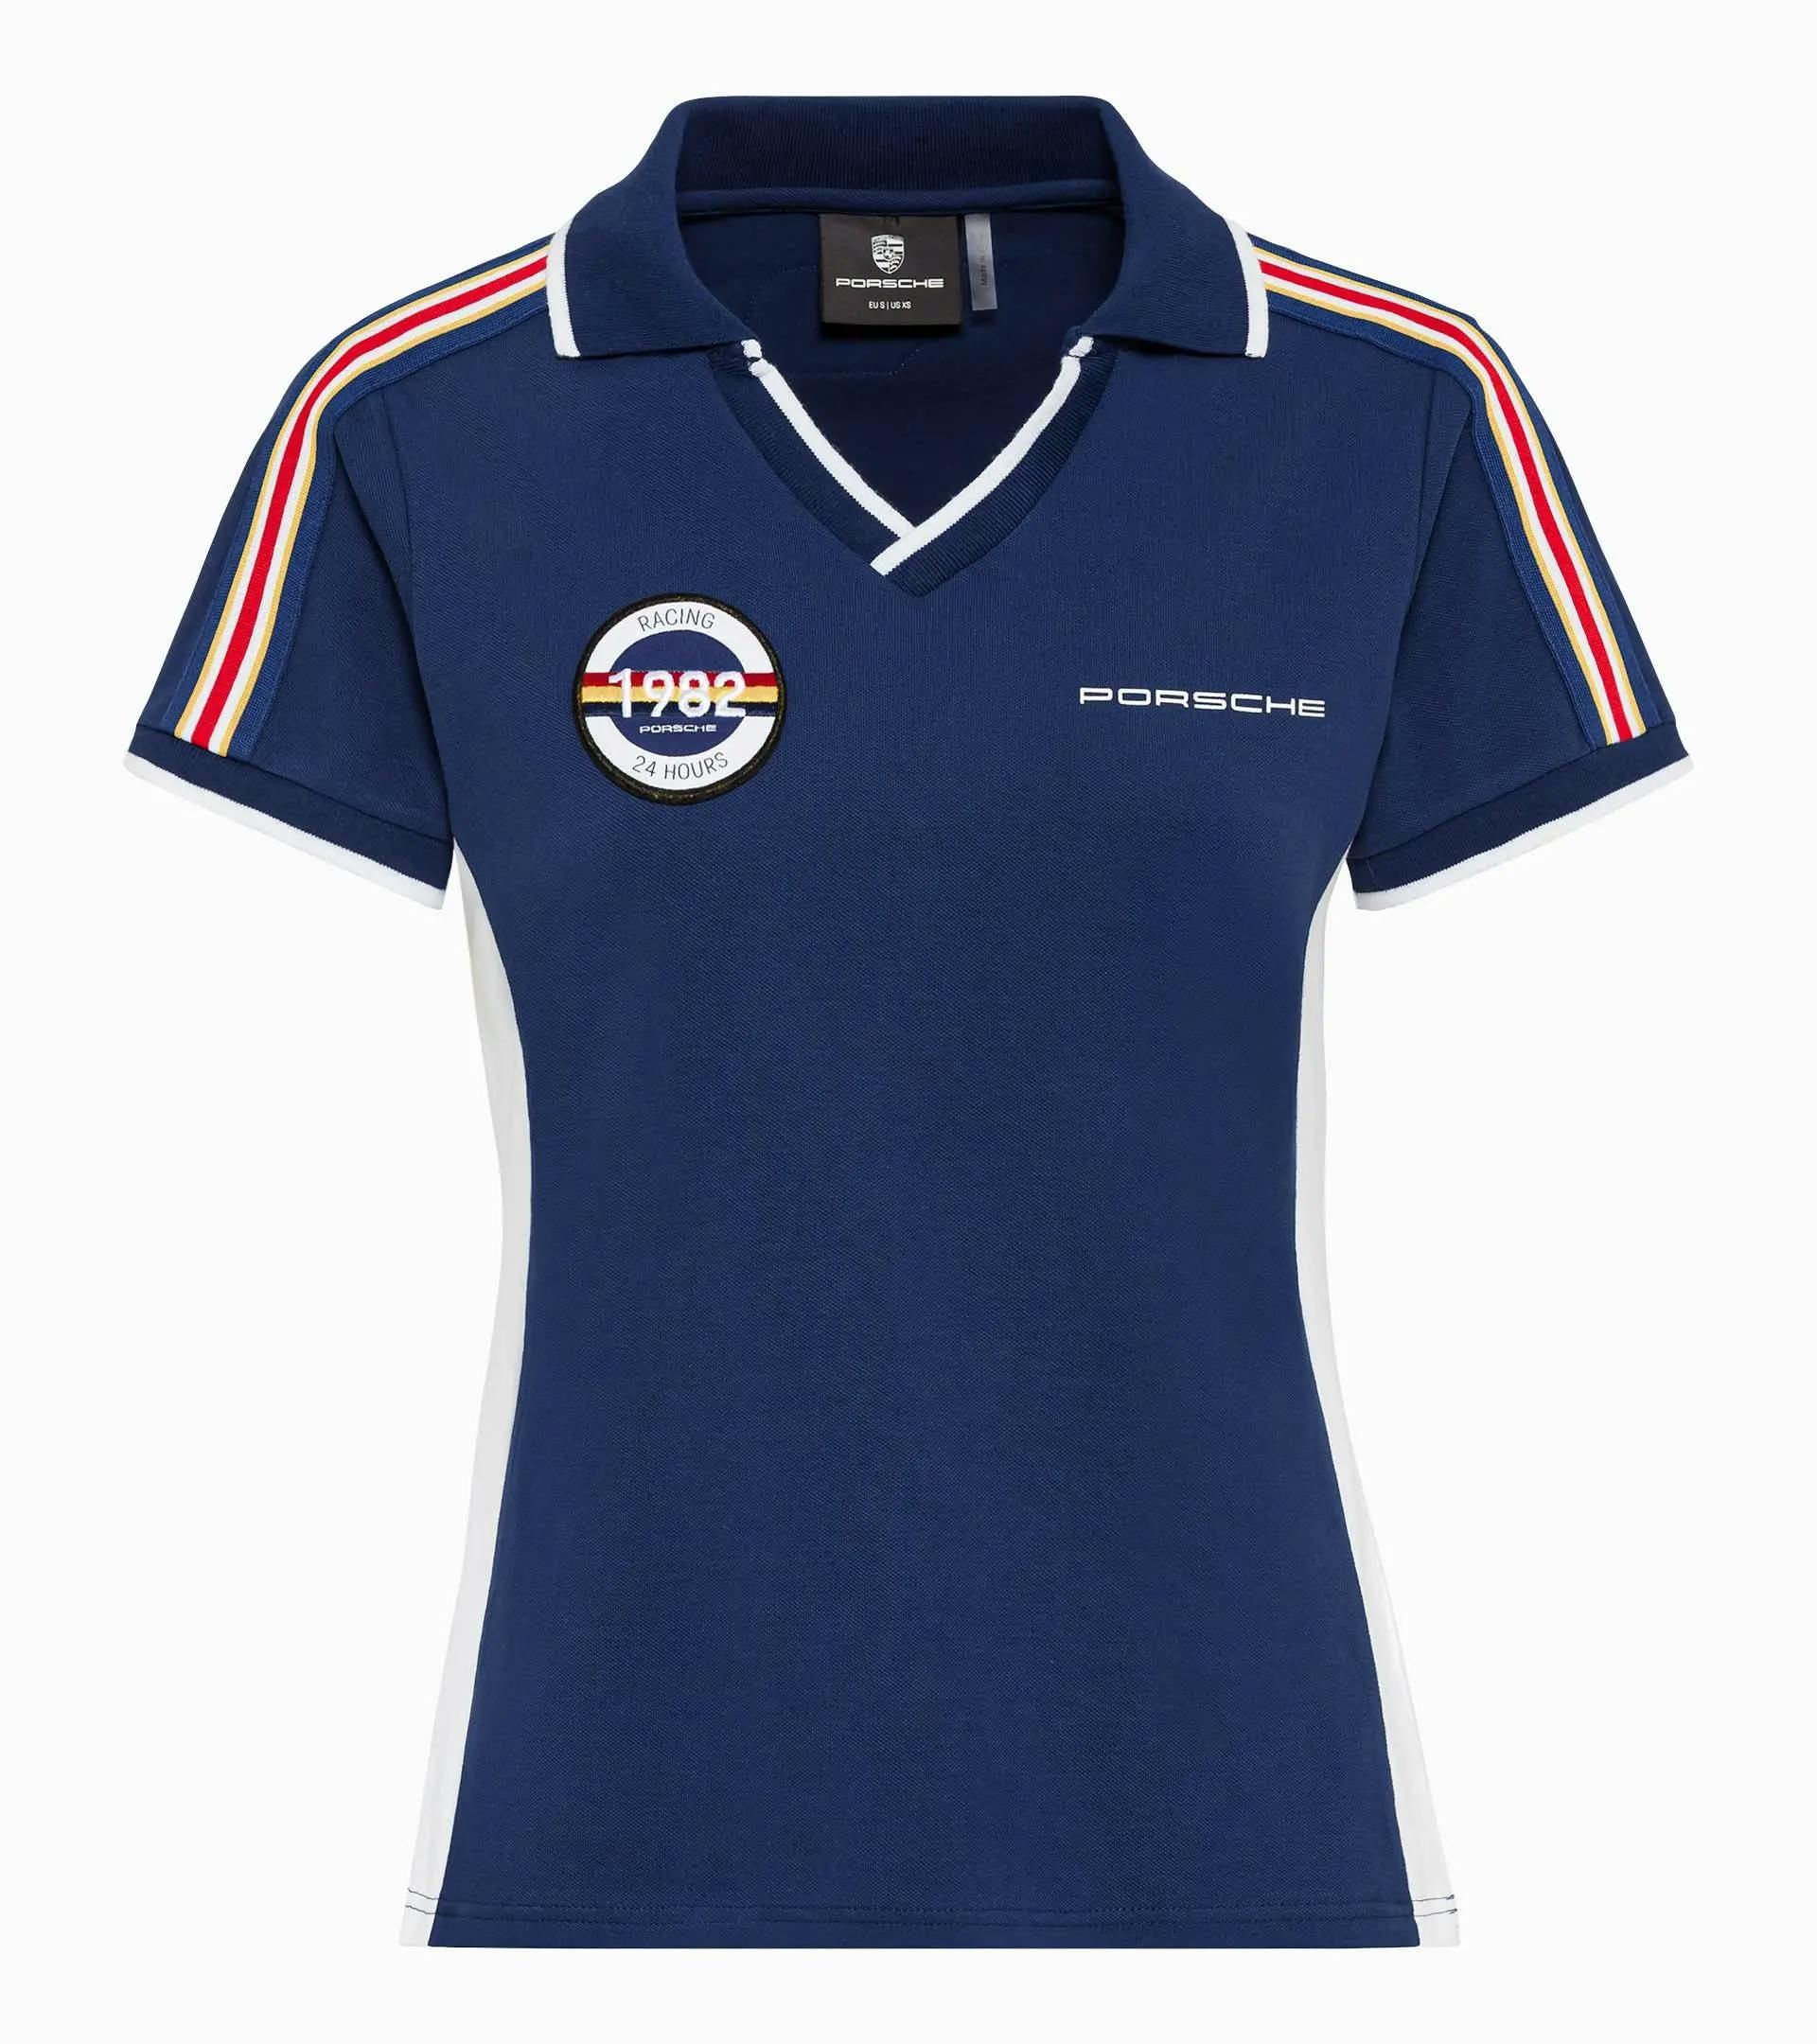 Ladies' polo shirt – Racing 1